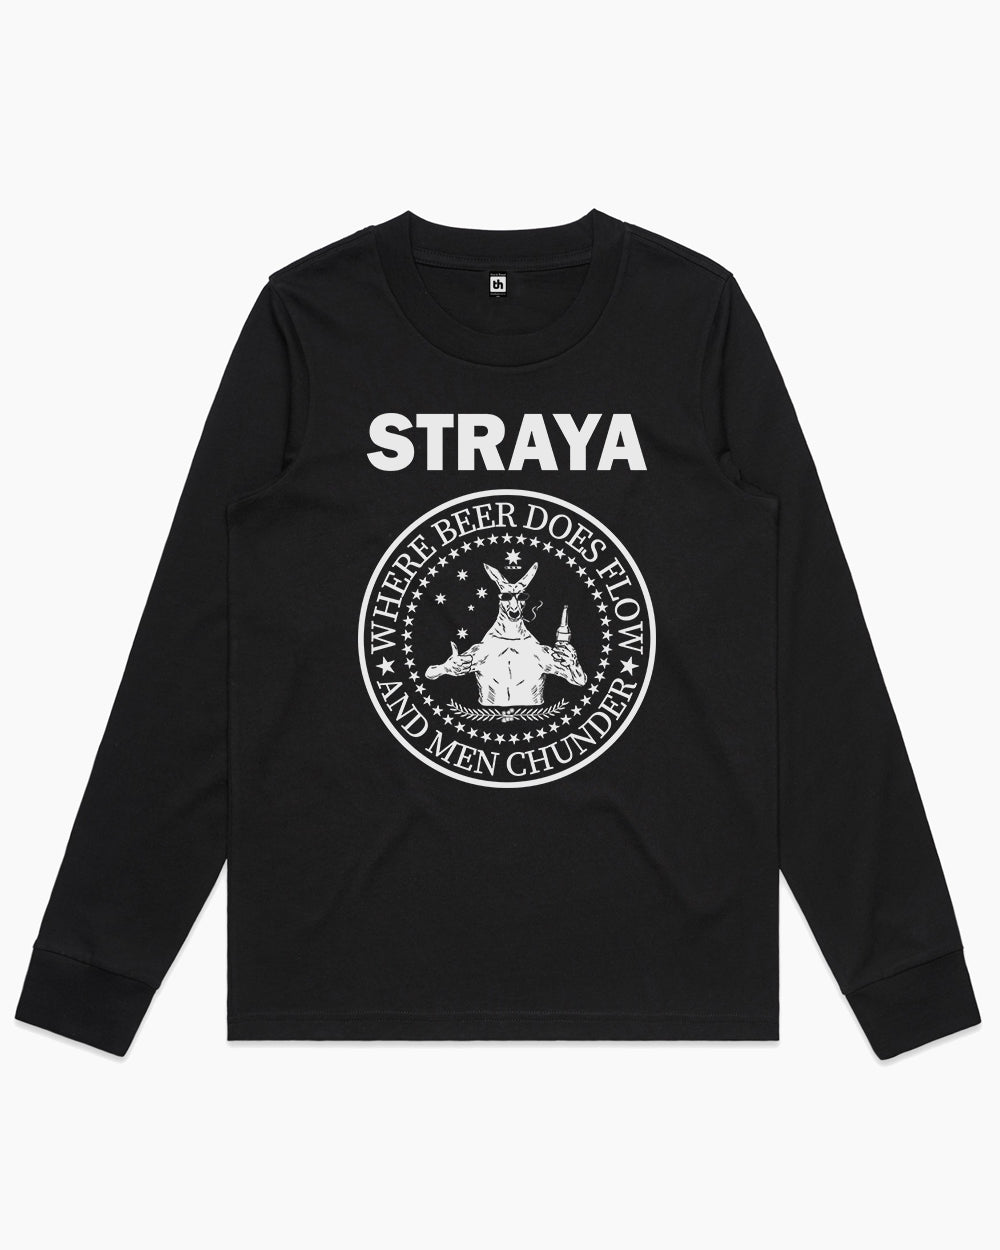 Straya - Where Beer Does Flow & Men Chunder Long Sleeve Australia Online #colour_black